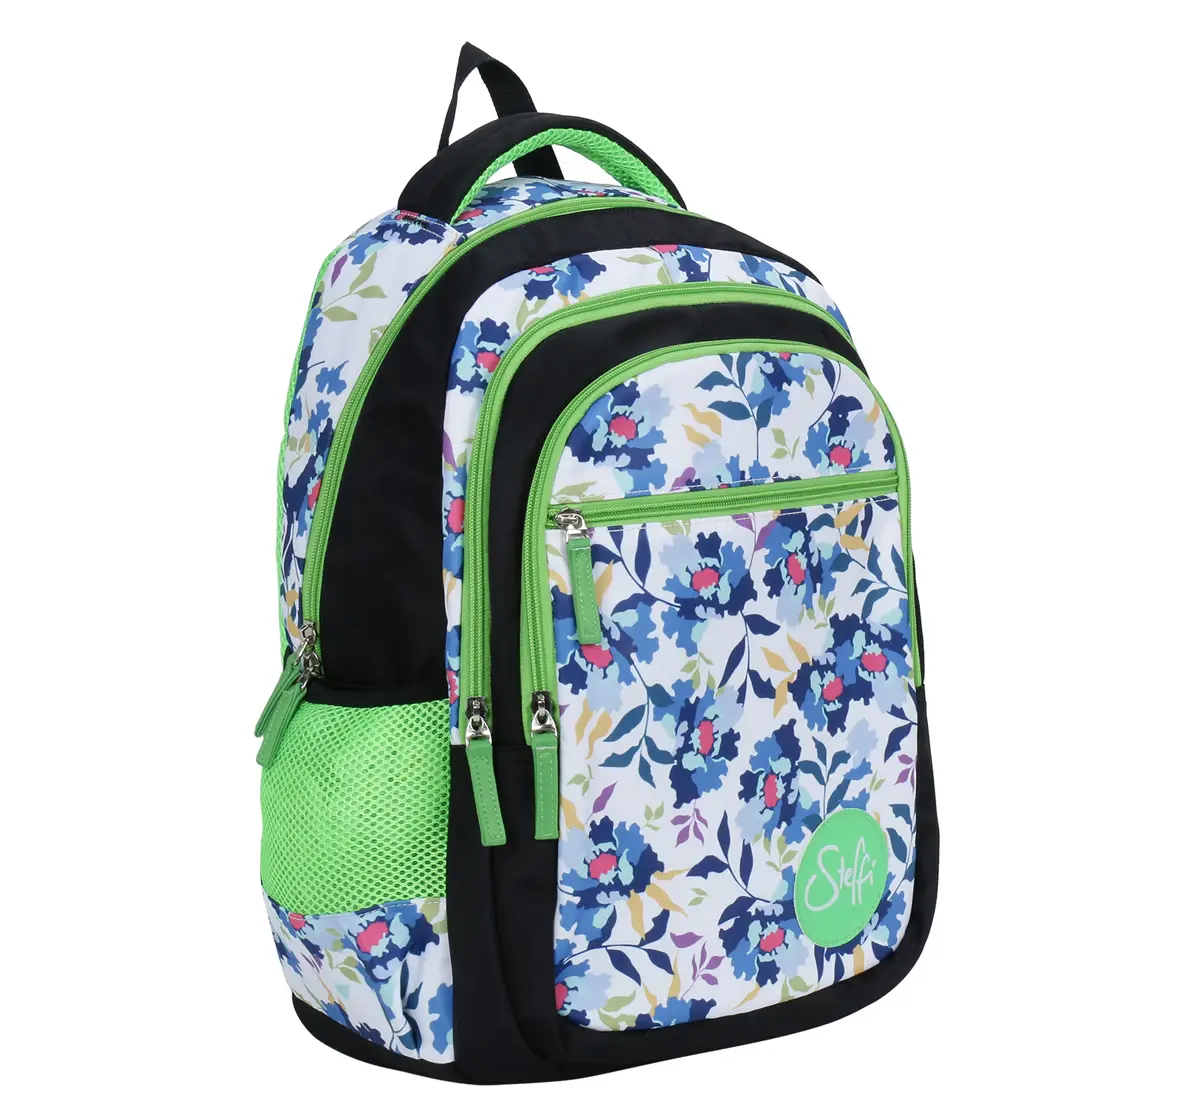 Simba Steffi Love Snowdrop 19 Backpack Multicolor 3Y+